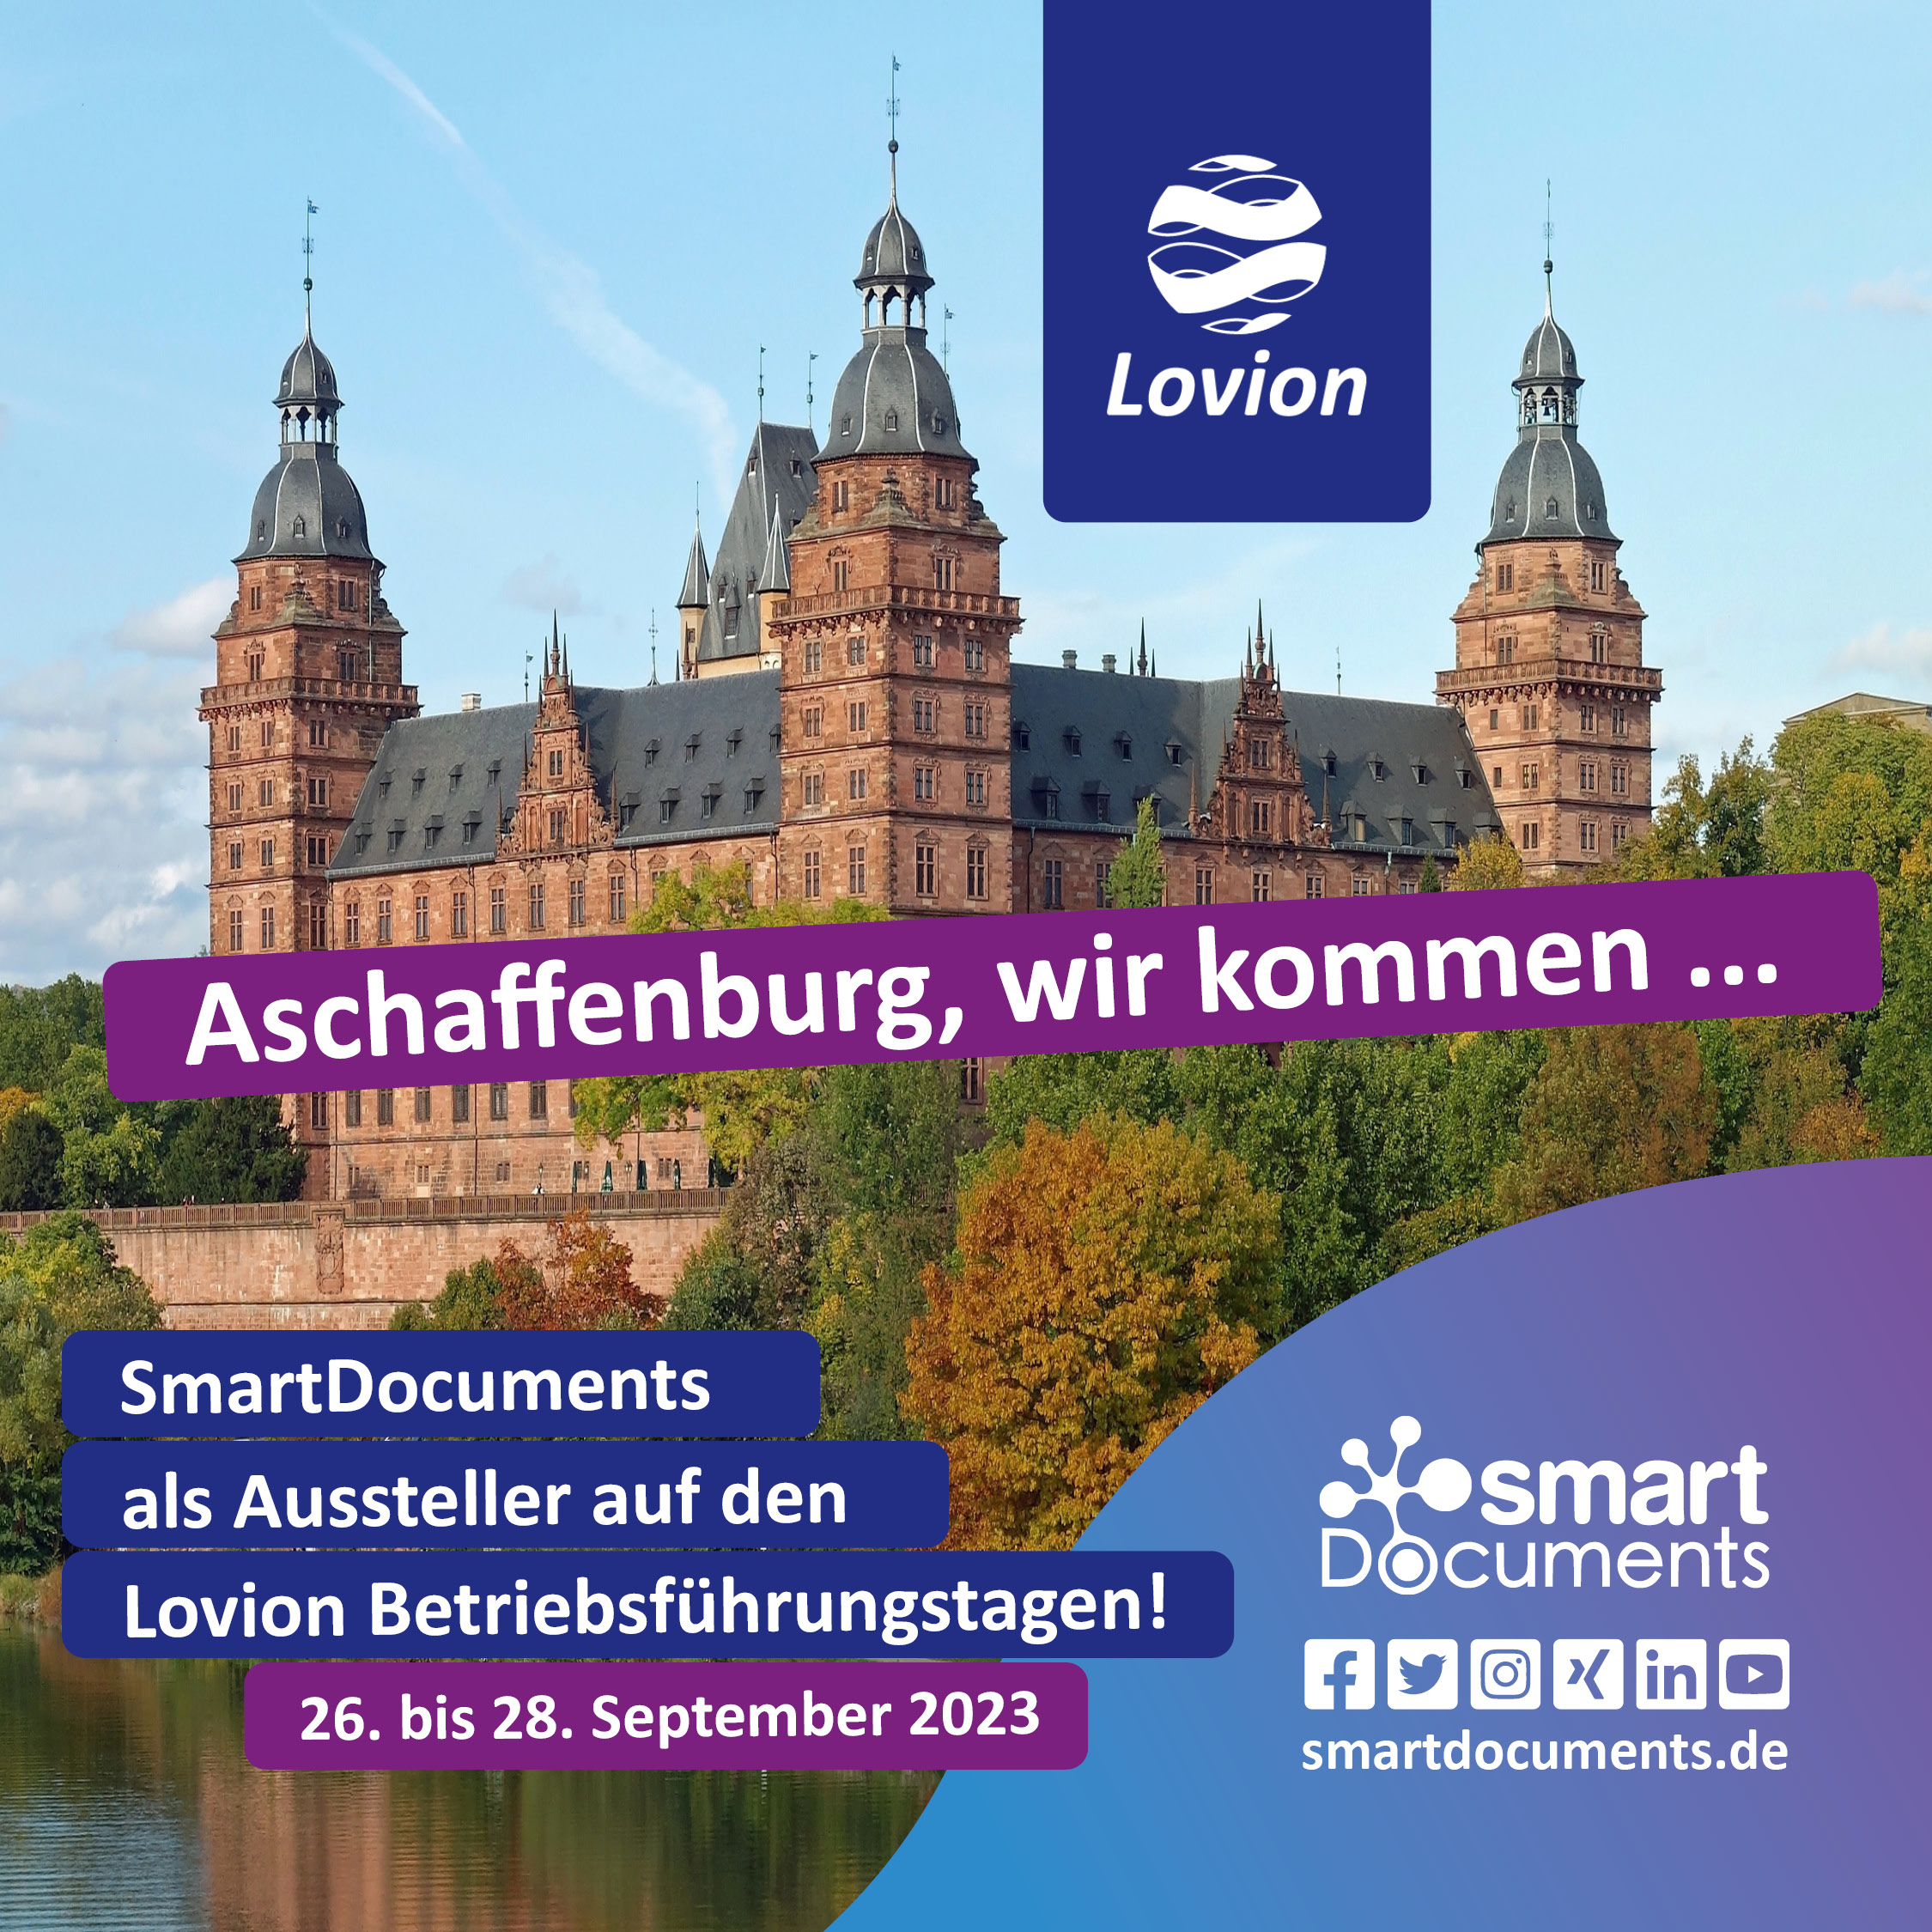 Aschaffenburg, wir kommen... SmartDocuments als Aussteller auf den Lovion Betriebsführungstagen vom 26. bis 28.09.2023